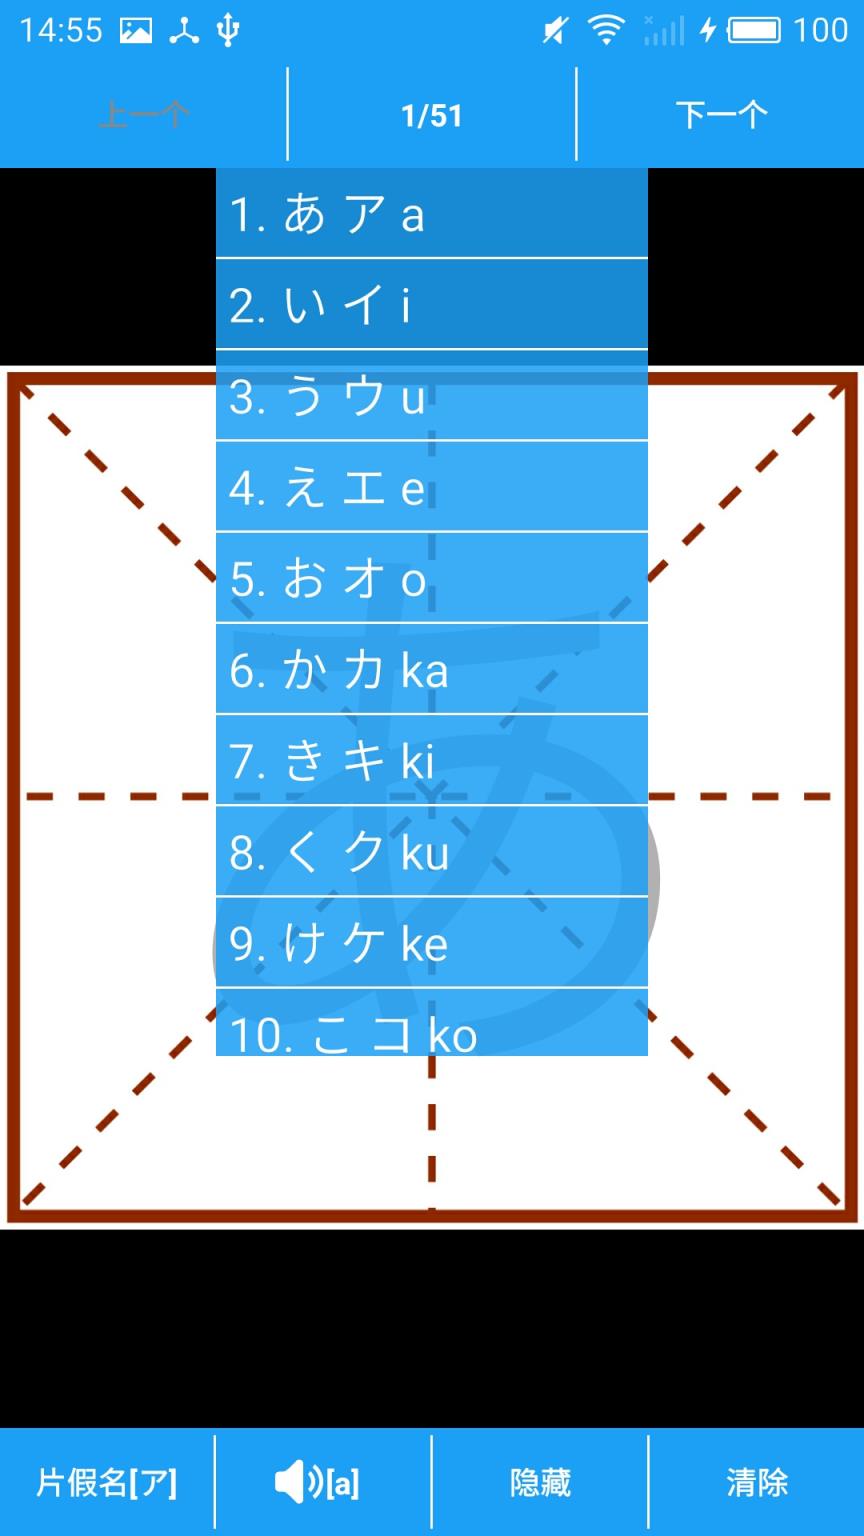 日语五十音手写
